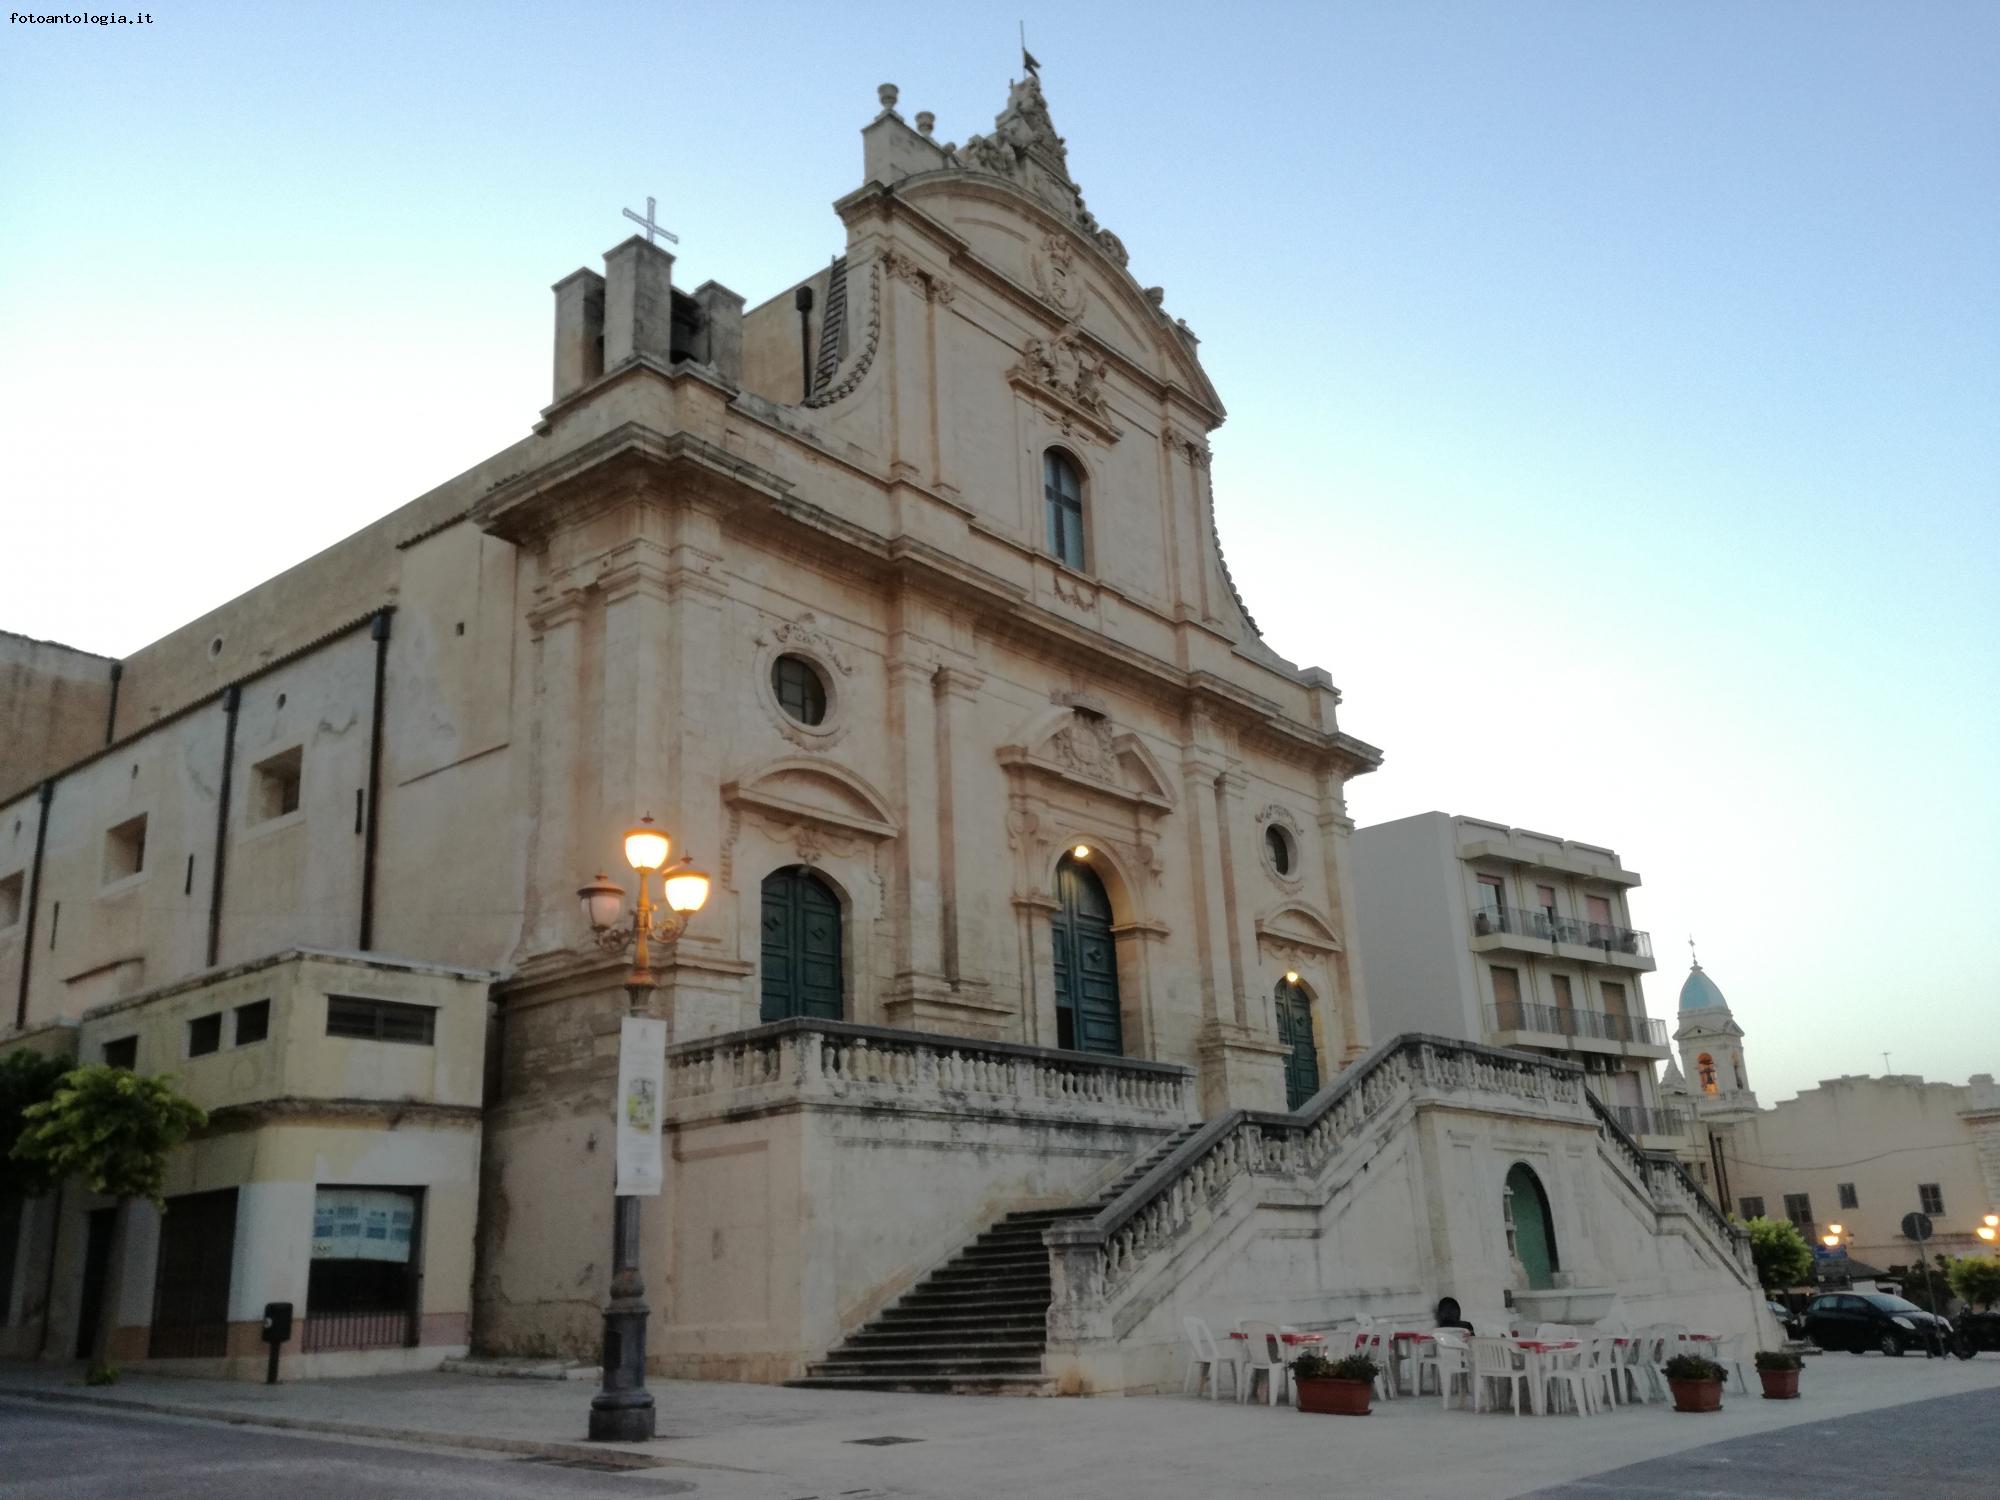 Ispica - Santa Maria Maggiore